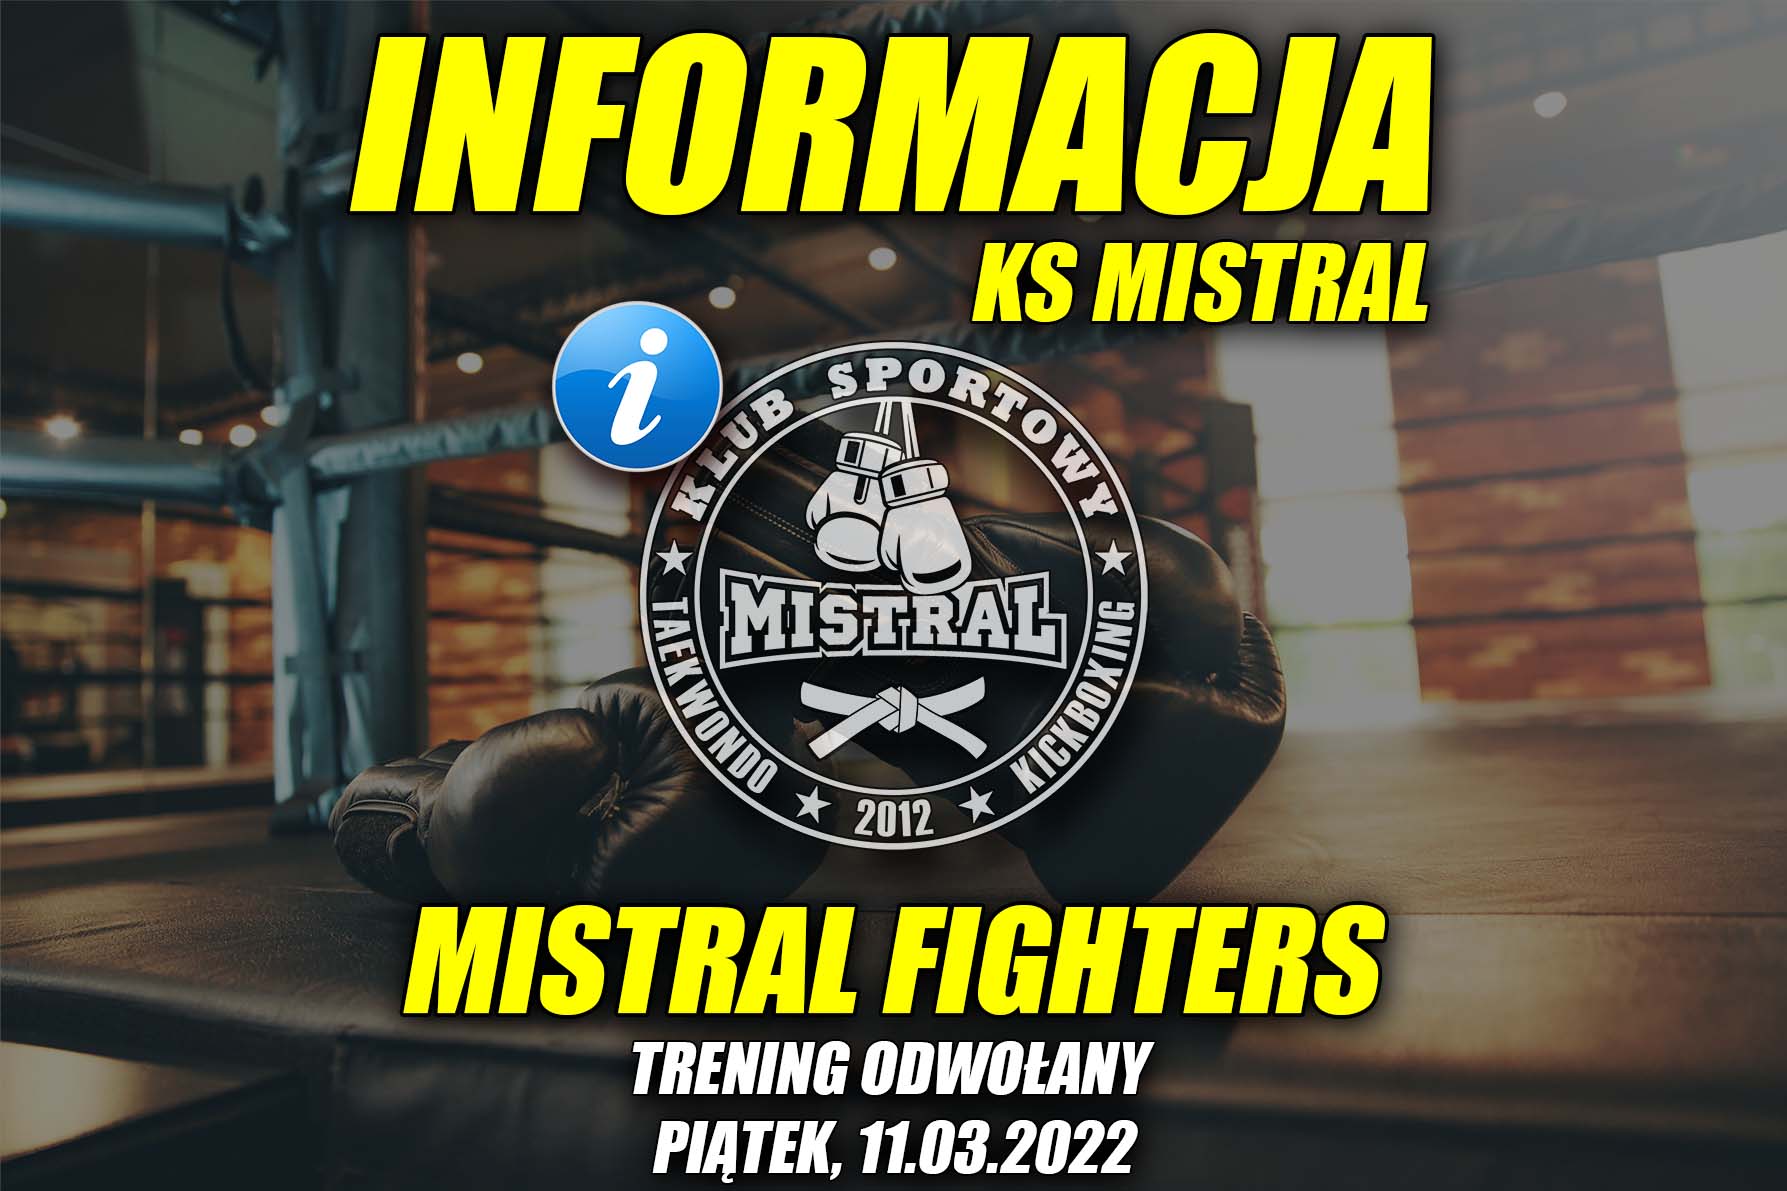 Informacja KS MISTRAL - trening odwołany 11.03.2022.jpg